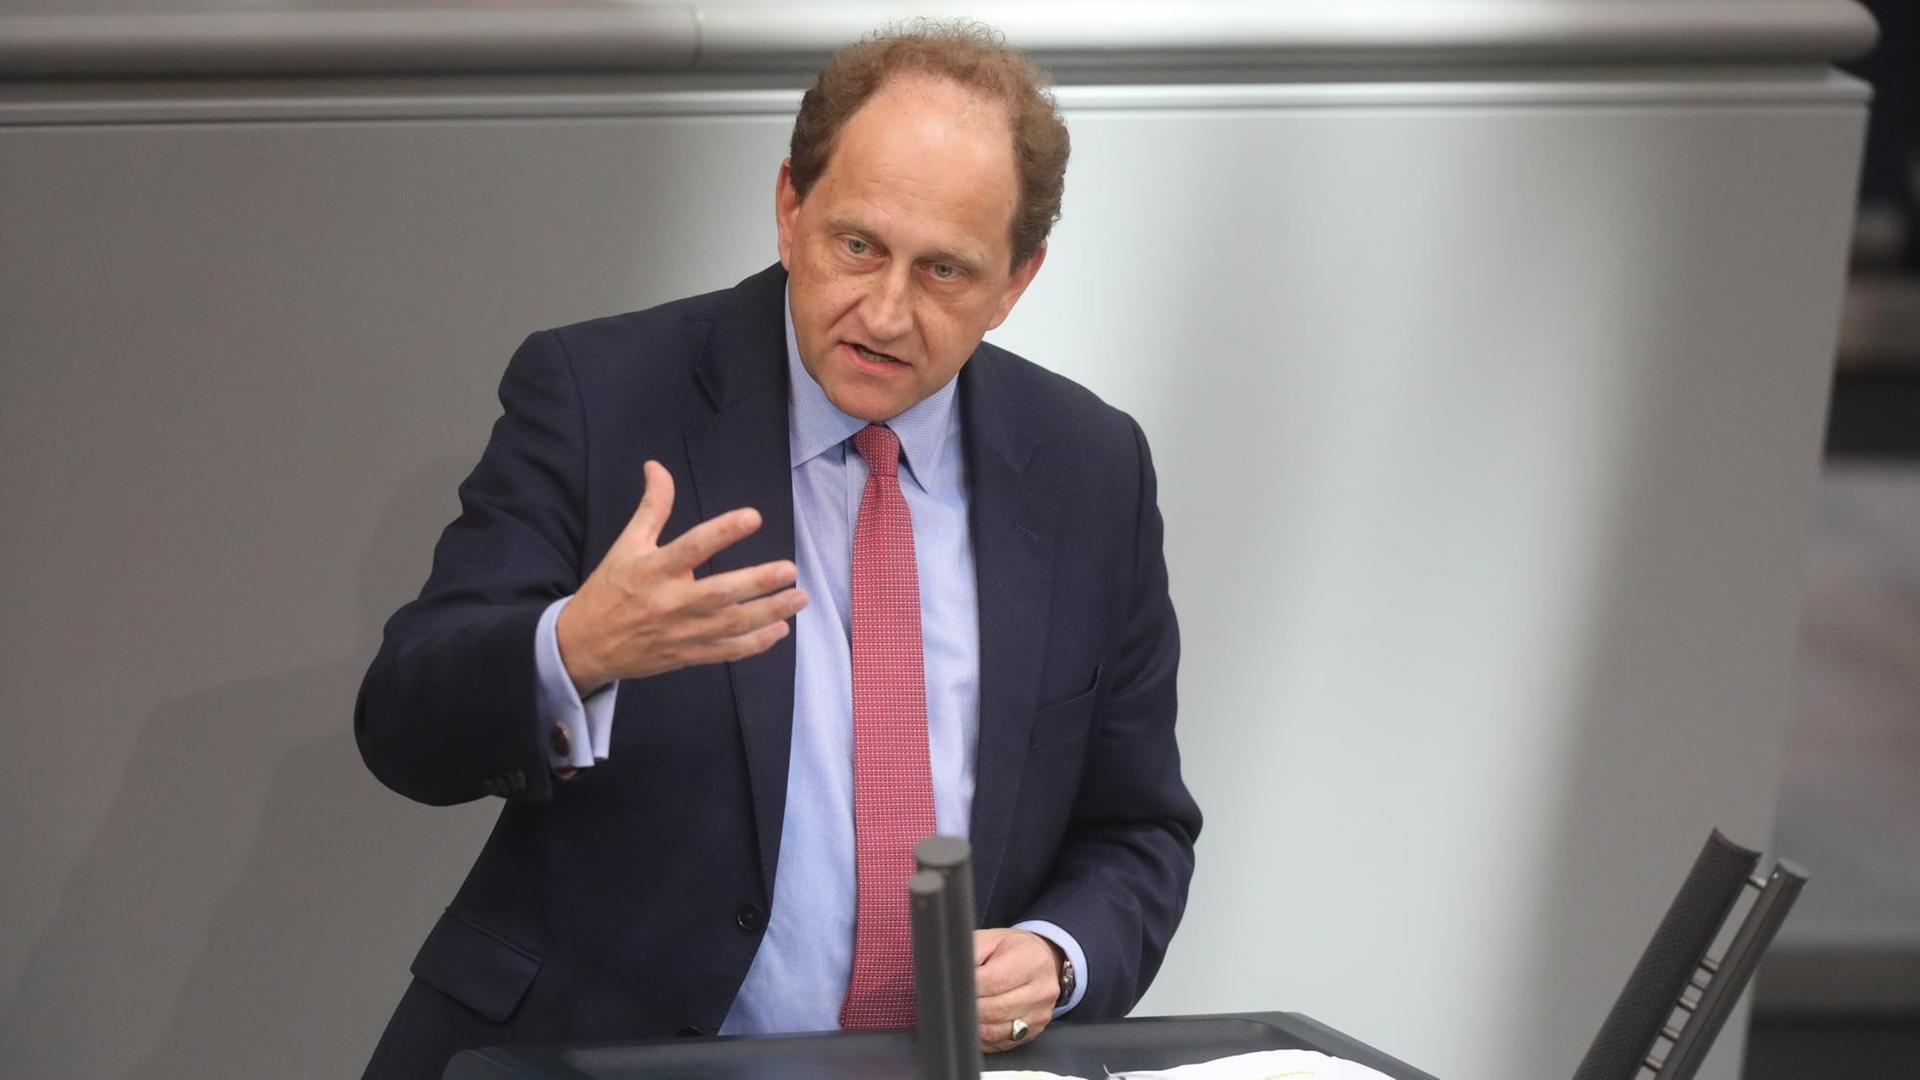 Der Abgeordnete Alexander Graf Lambsdorff (FDP) spricht bei der Generaldebatte im Deutschen Bundestag.